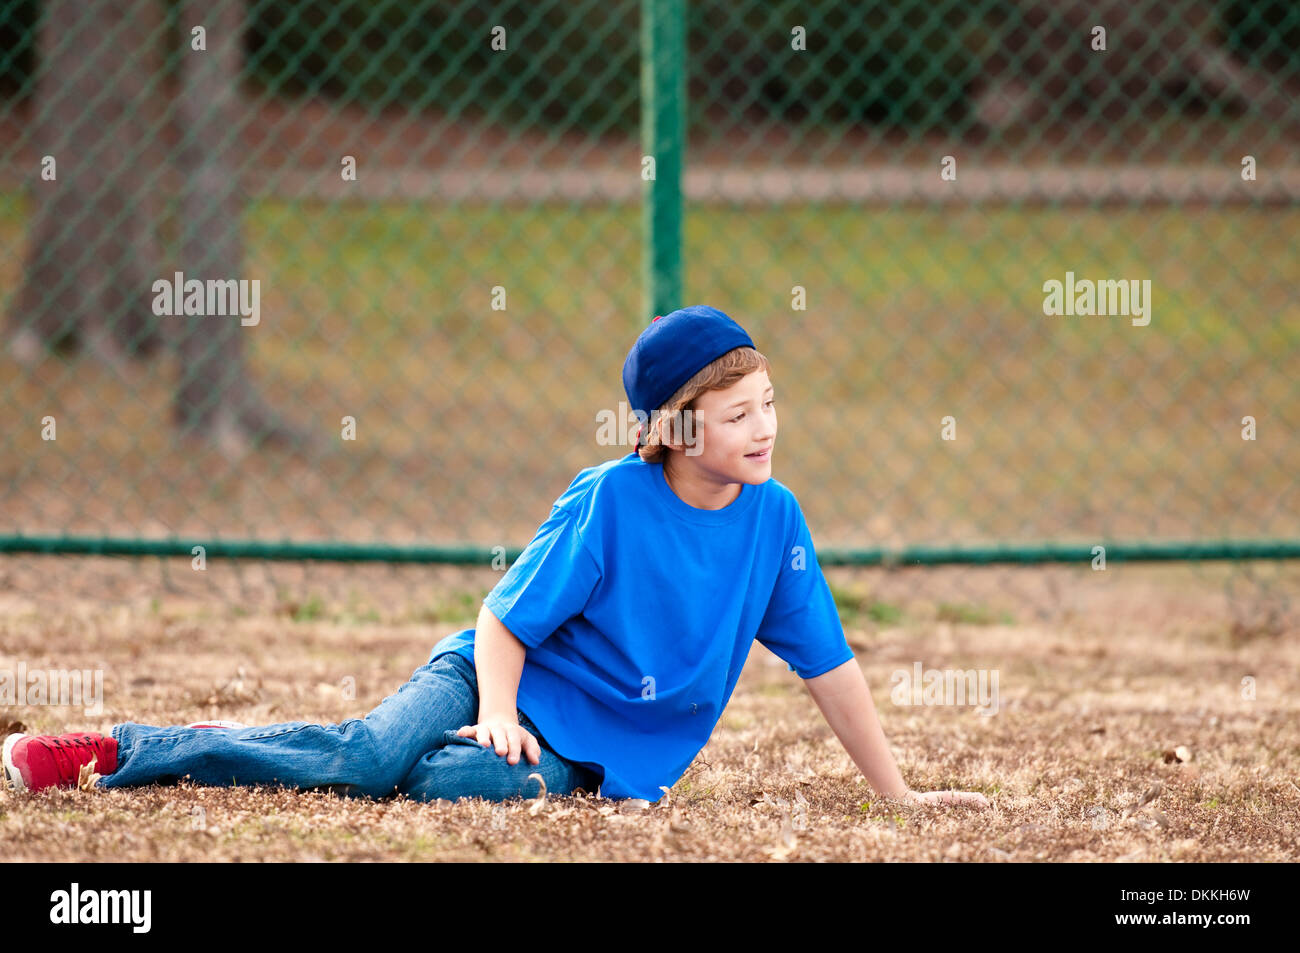 Cute boy playing backyard baseball sitting on grass Stock Photo